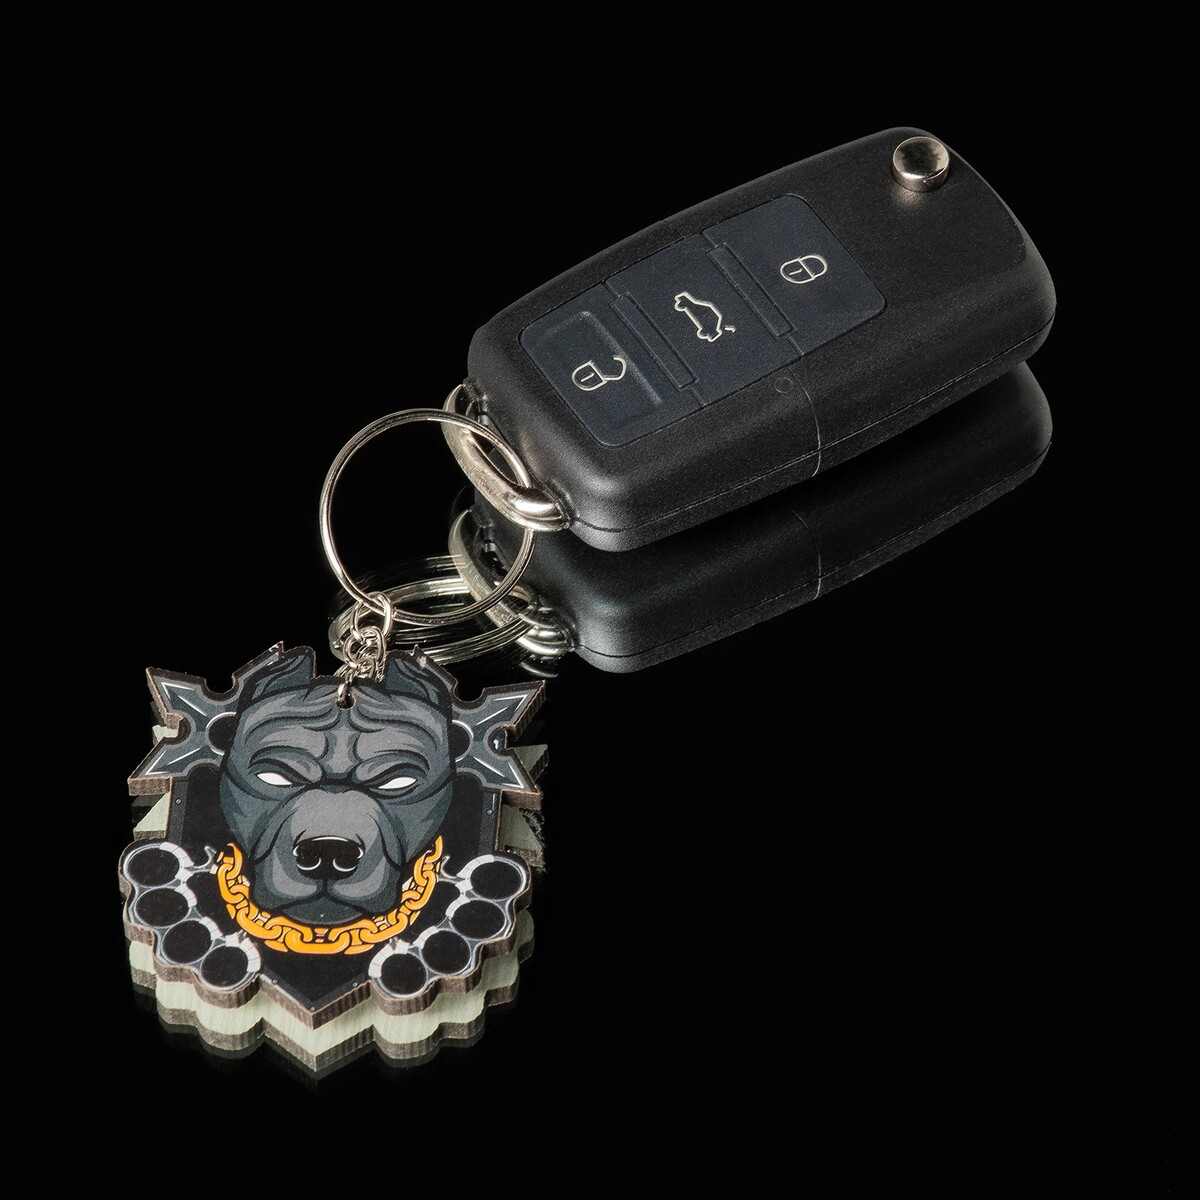 Брелок для автомобильного ключа, питбуль No brand, цвет черный 05578502 - фото 1